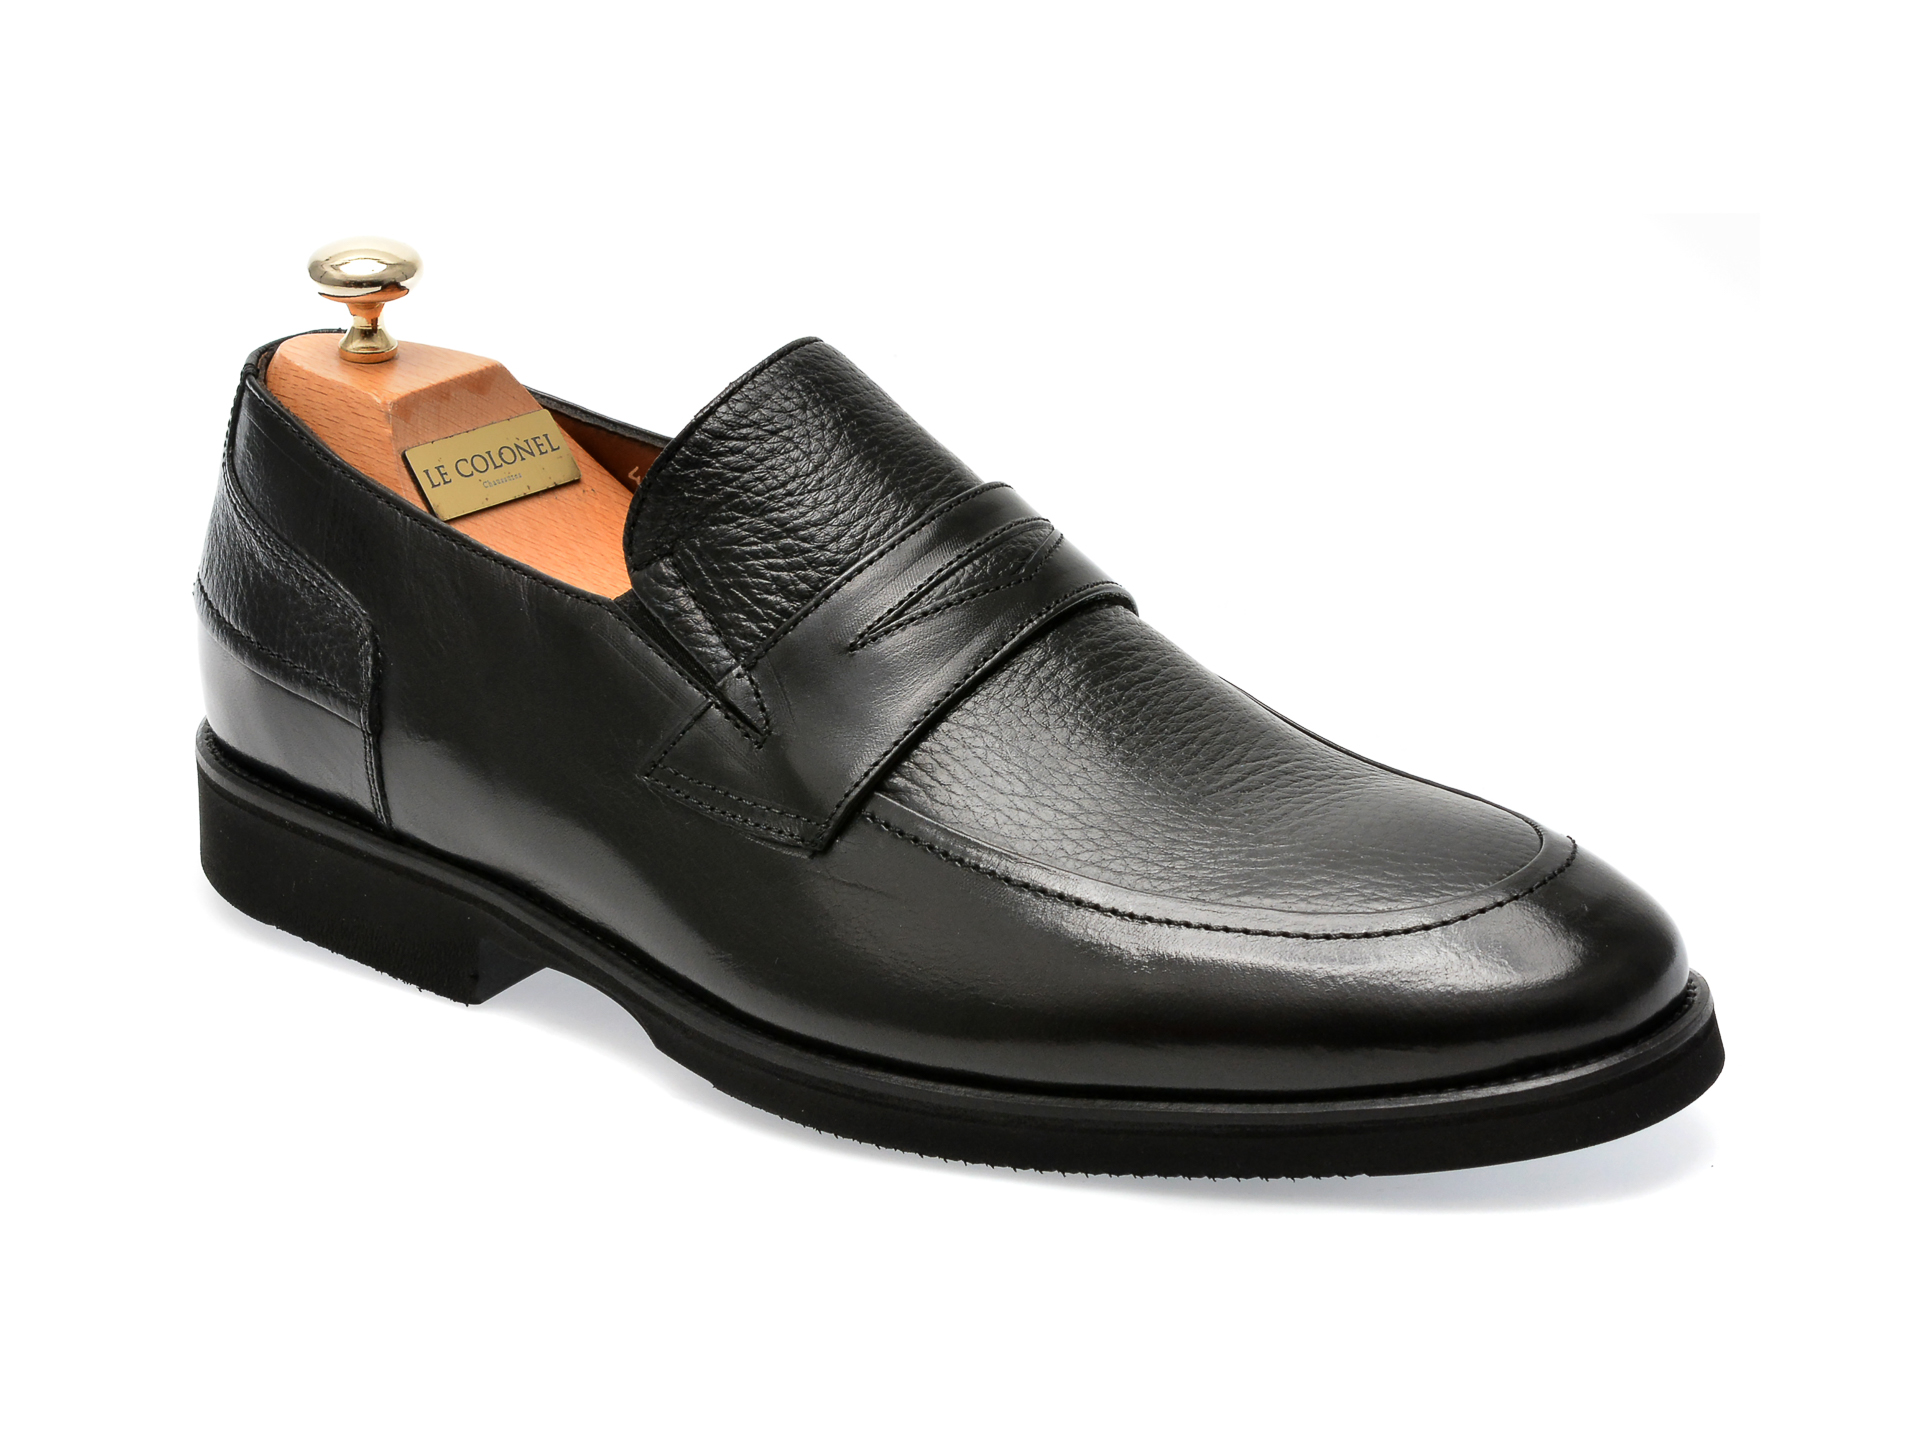 Pantofi LE COLONEL negri, 422104, din piele naturala Le Colonel